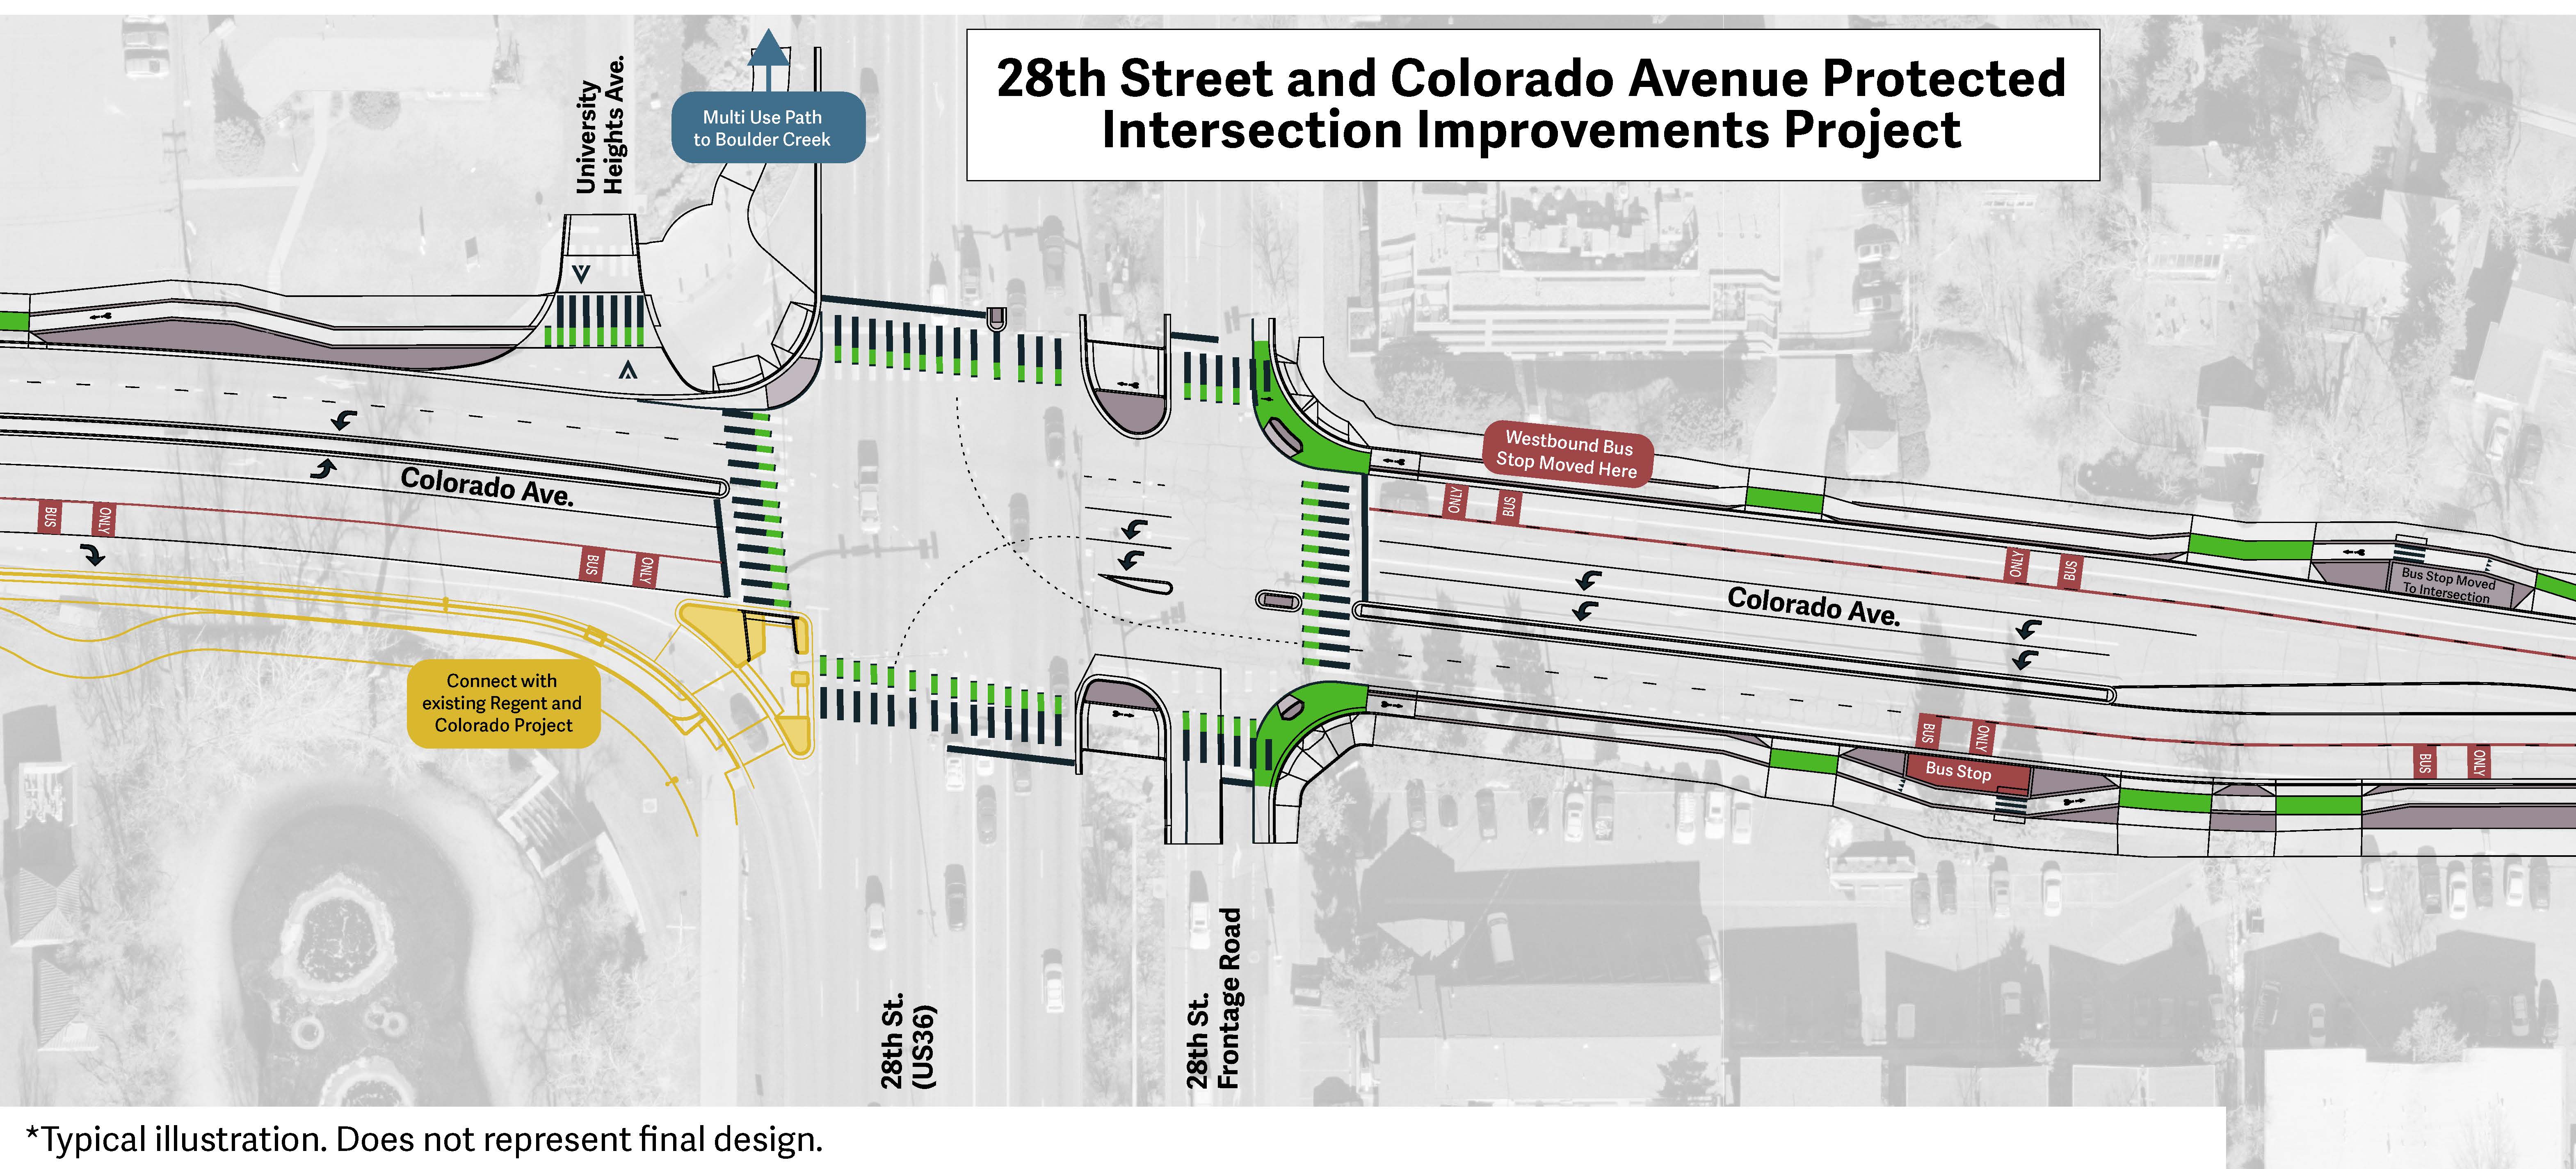 Un gráfico conceptual del proyecto entre las calles 28 y Colorado que ilustra las mejoras. Descripción larga en el título.